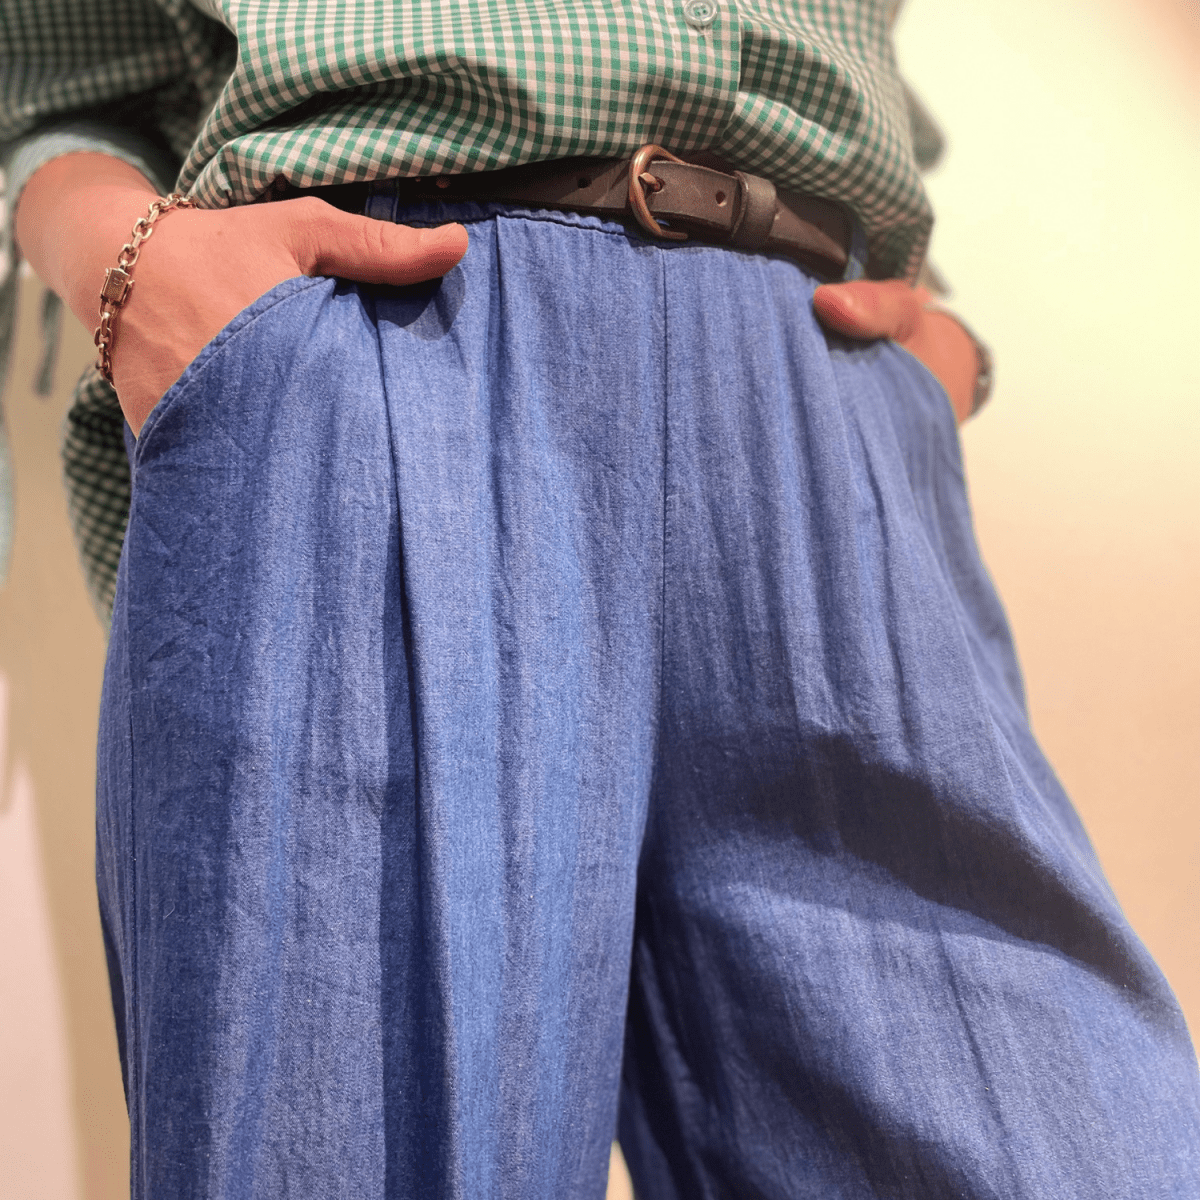 Et nærbillede af en person, der trækker i linningen på sine blå chambray bukser for at vise det løse fit. Personen har en grøn og hvid ternet skjorte stukket ned i bukserne og et brunt læderbælte med en guldspænde. Billedet fokuserer på personens maveområde fra lige under brystet til lårene.